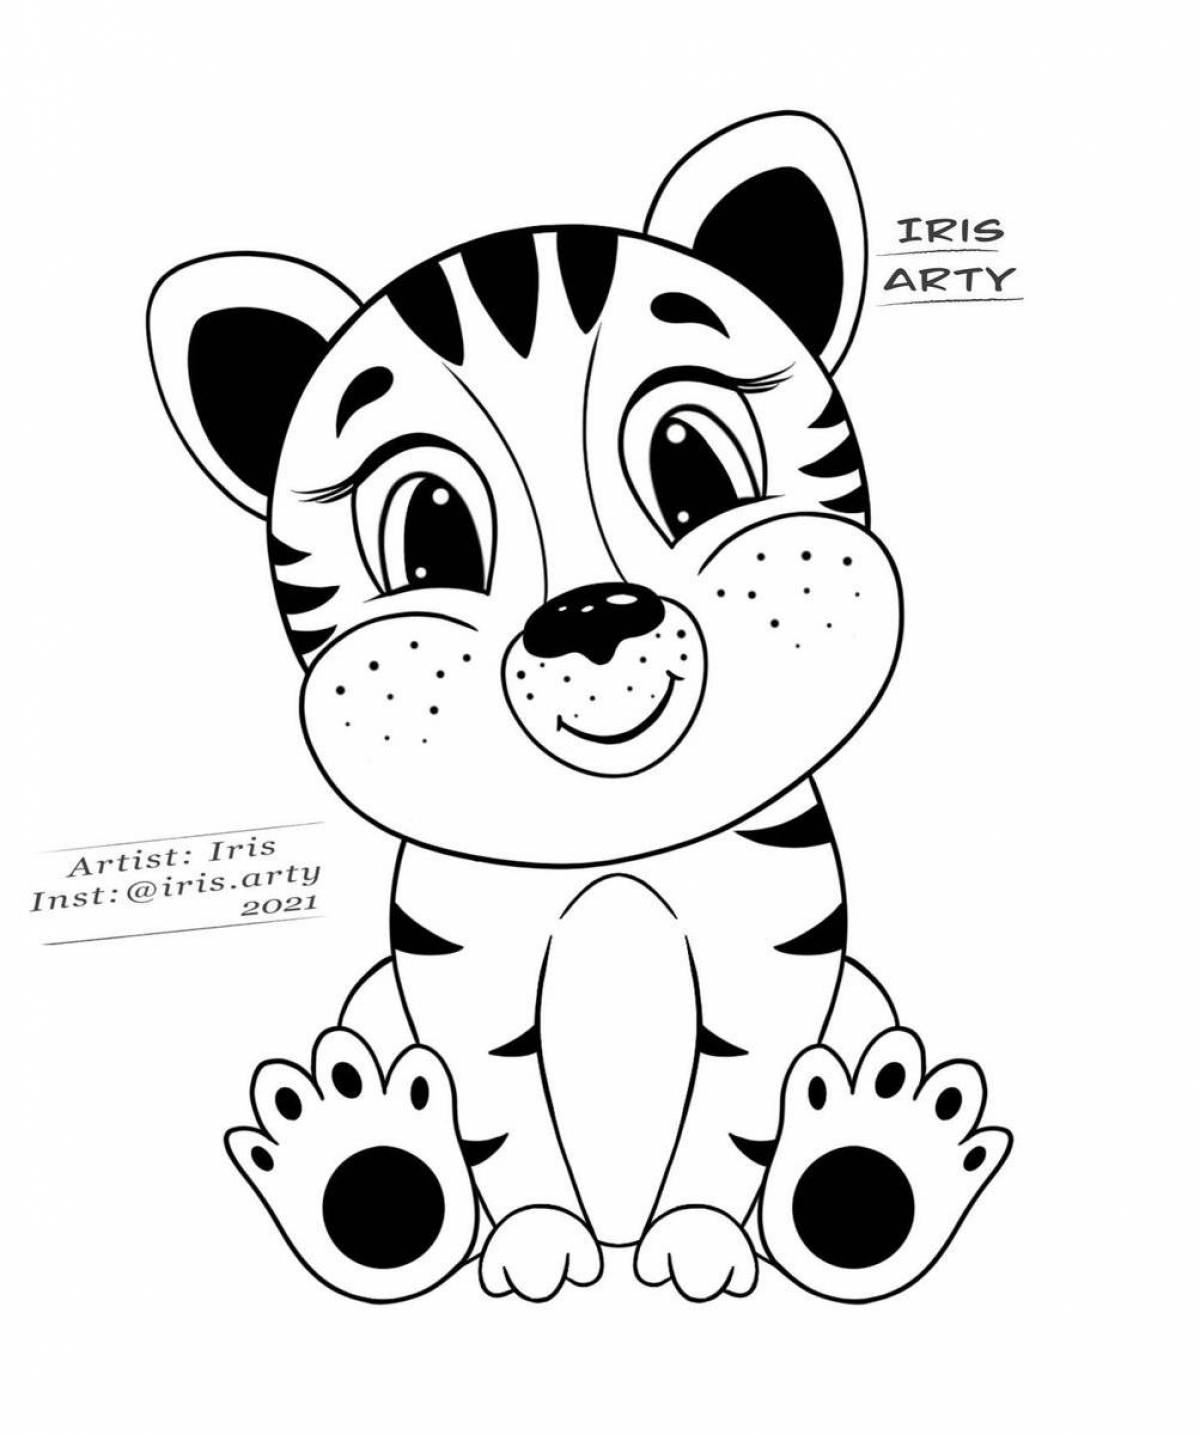 Adorable tiger cub coloring page